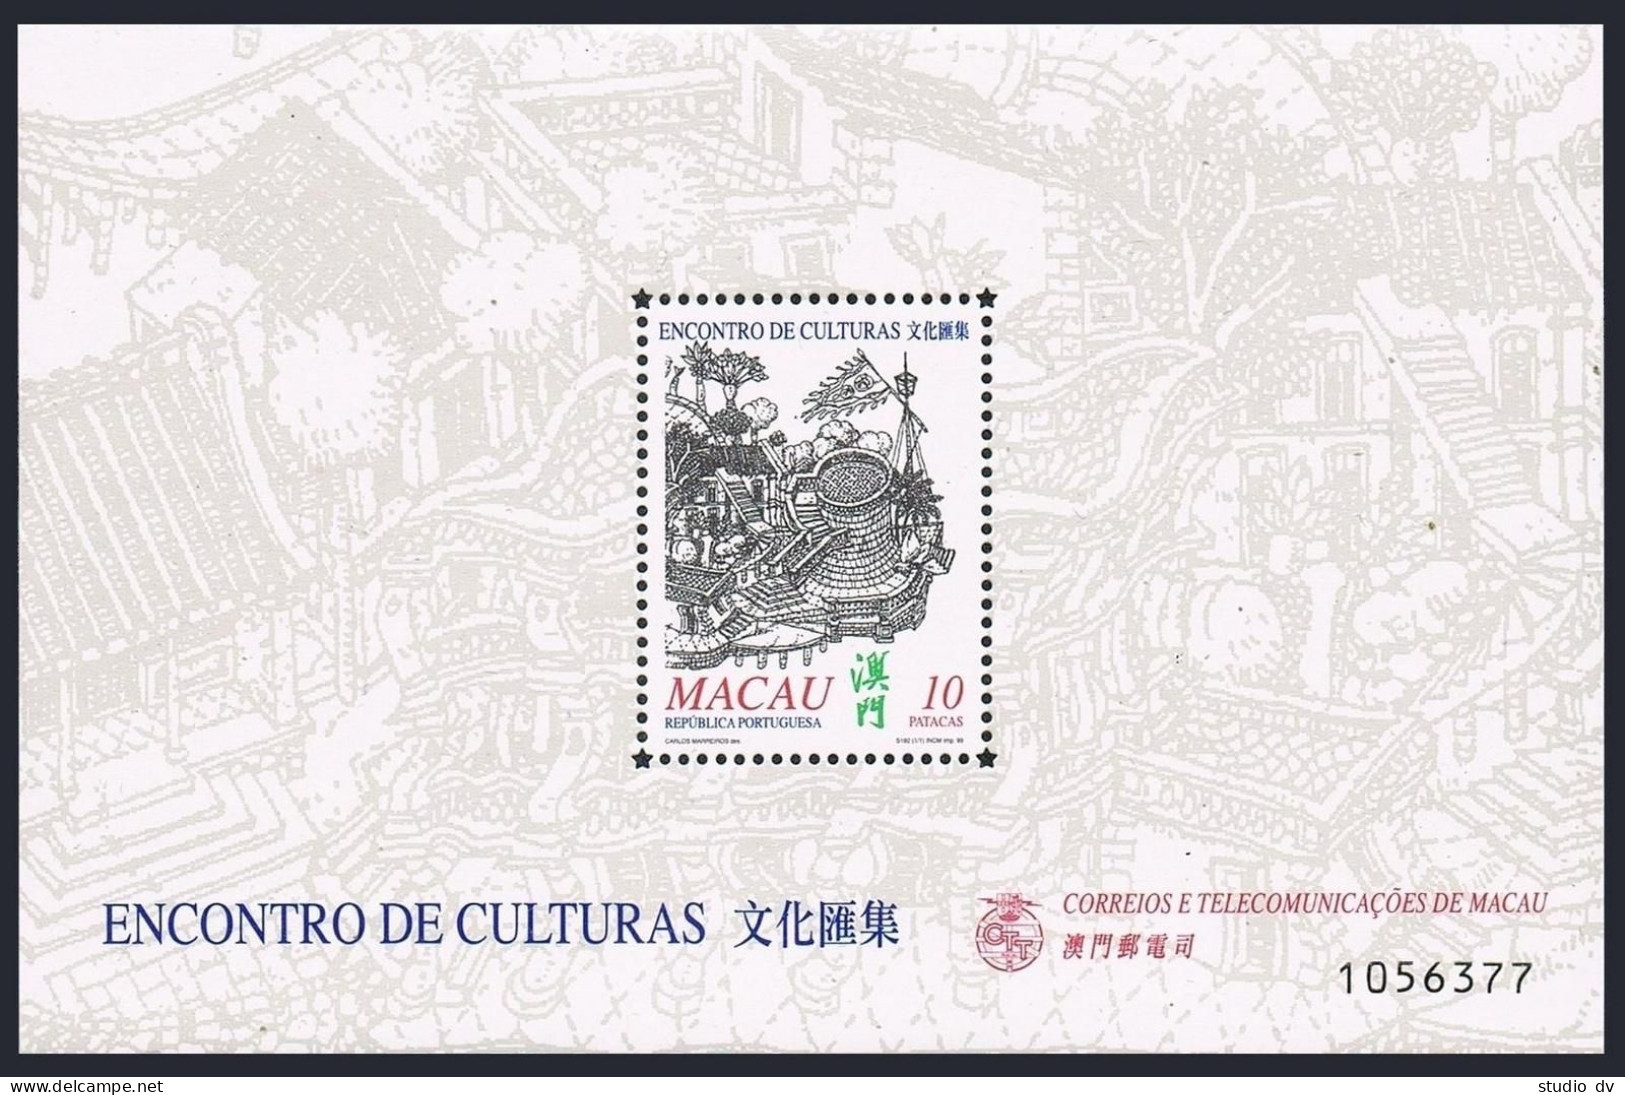 Macao 1008 Sheet,1009,1009a Overprinted,MNH. Ships,Building,Bridge. - Ongebruikt